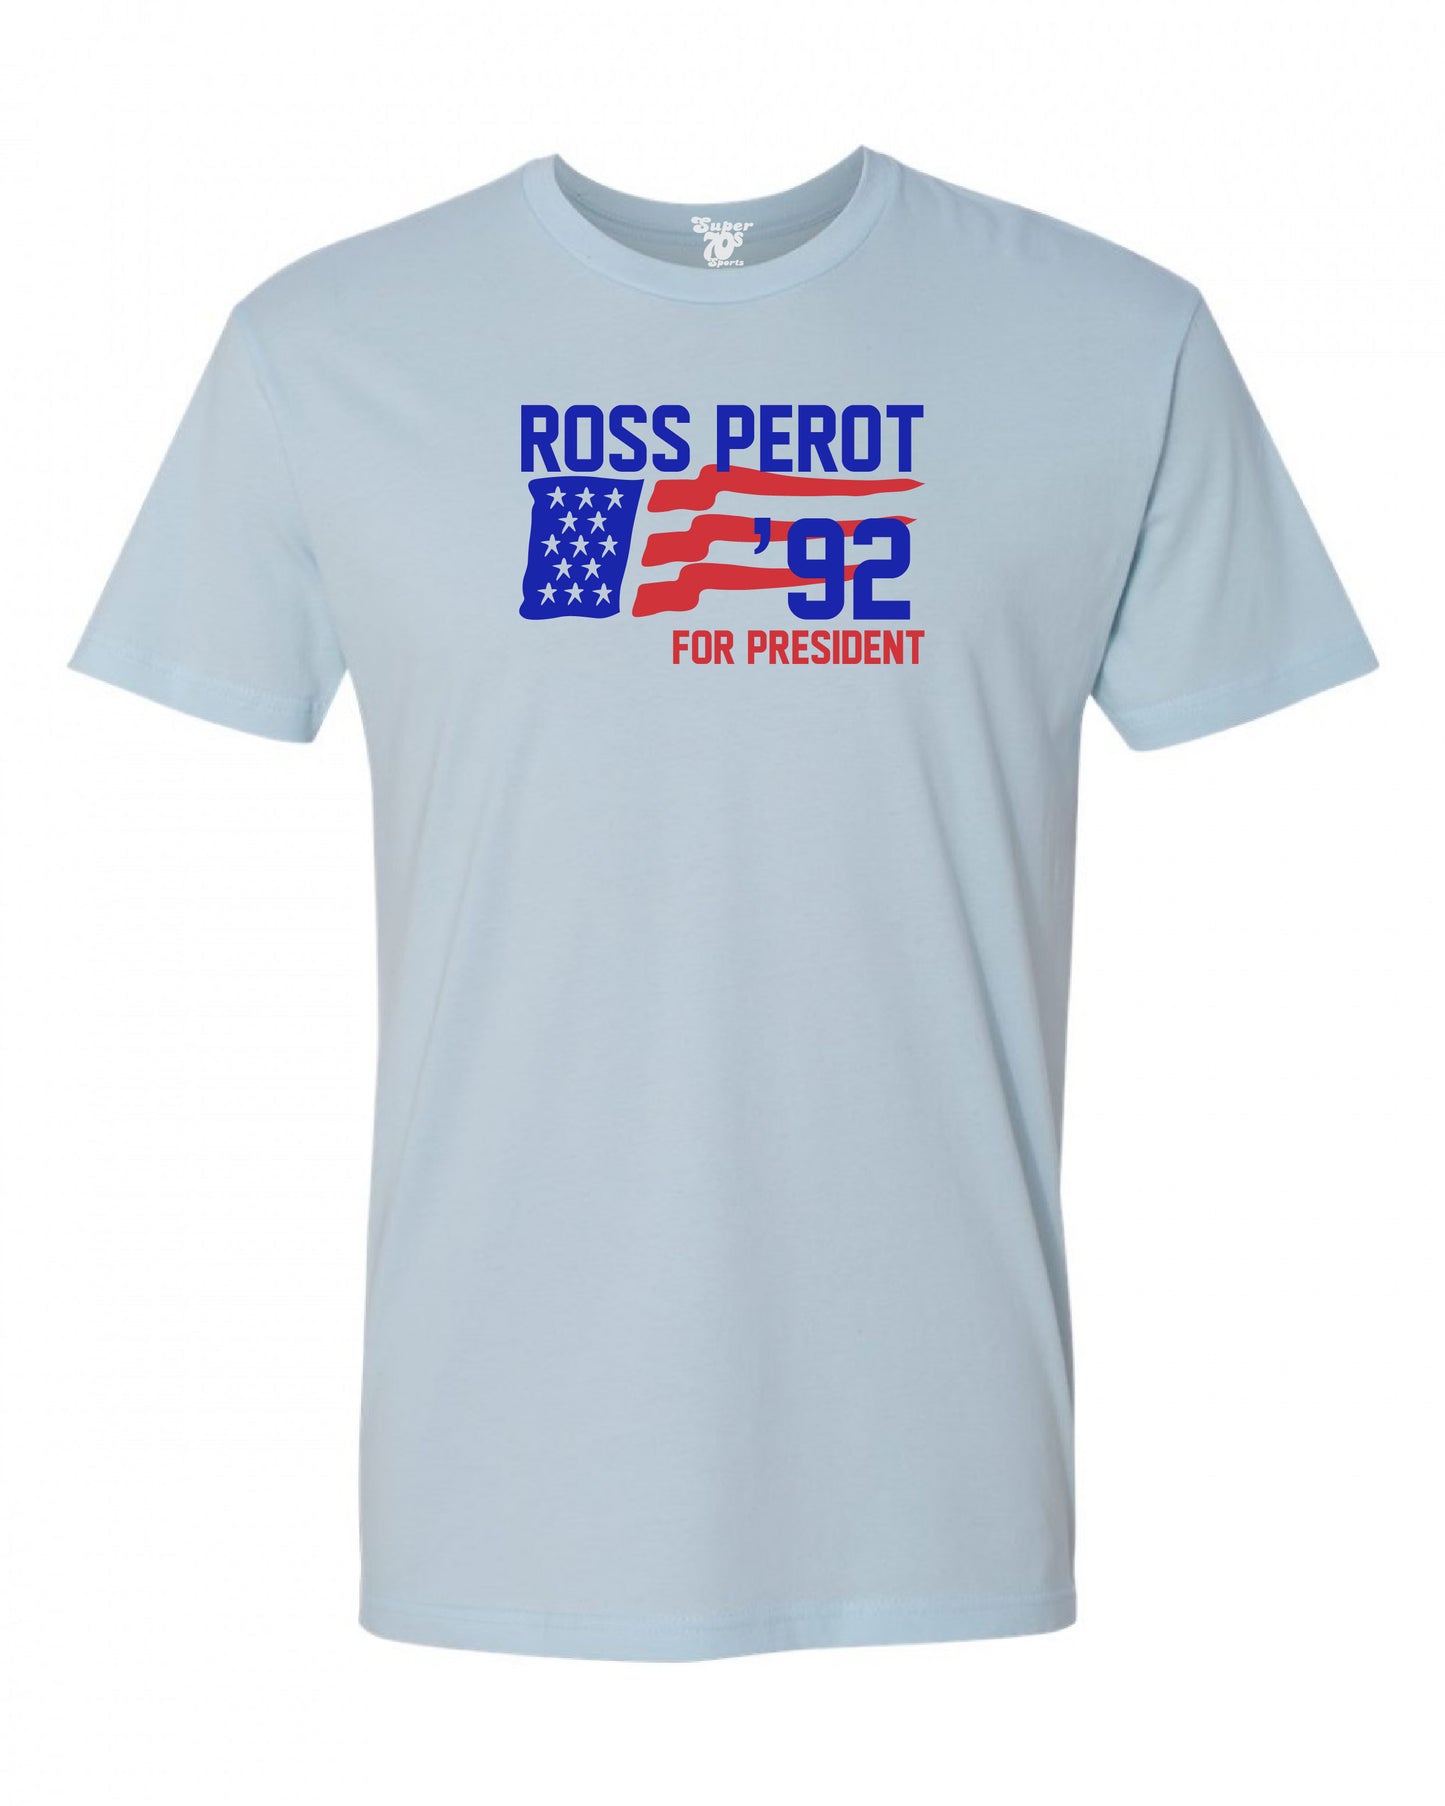 Ross Perot For President Tee